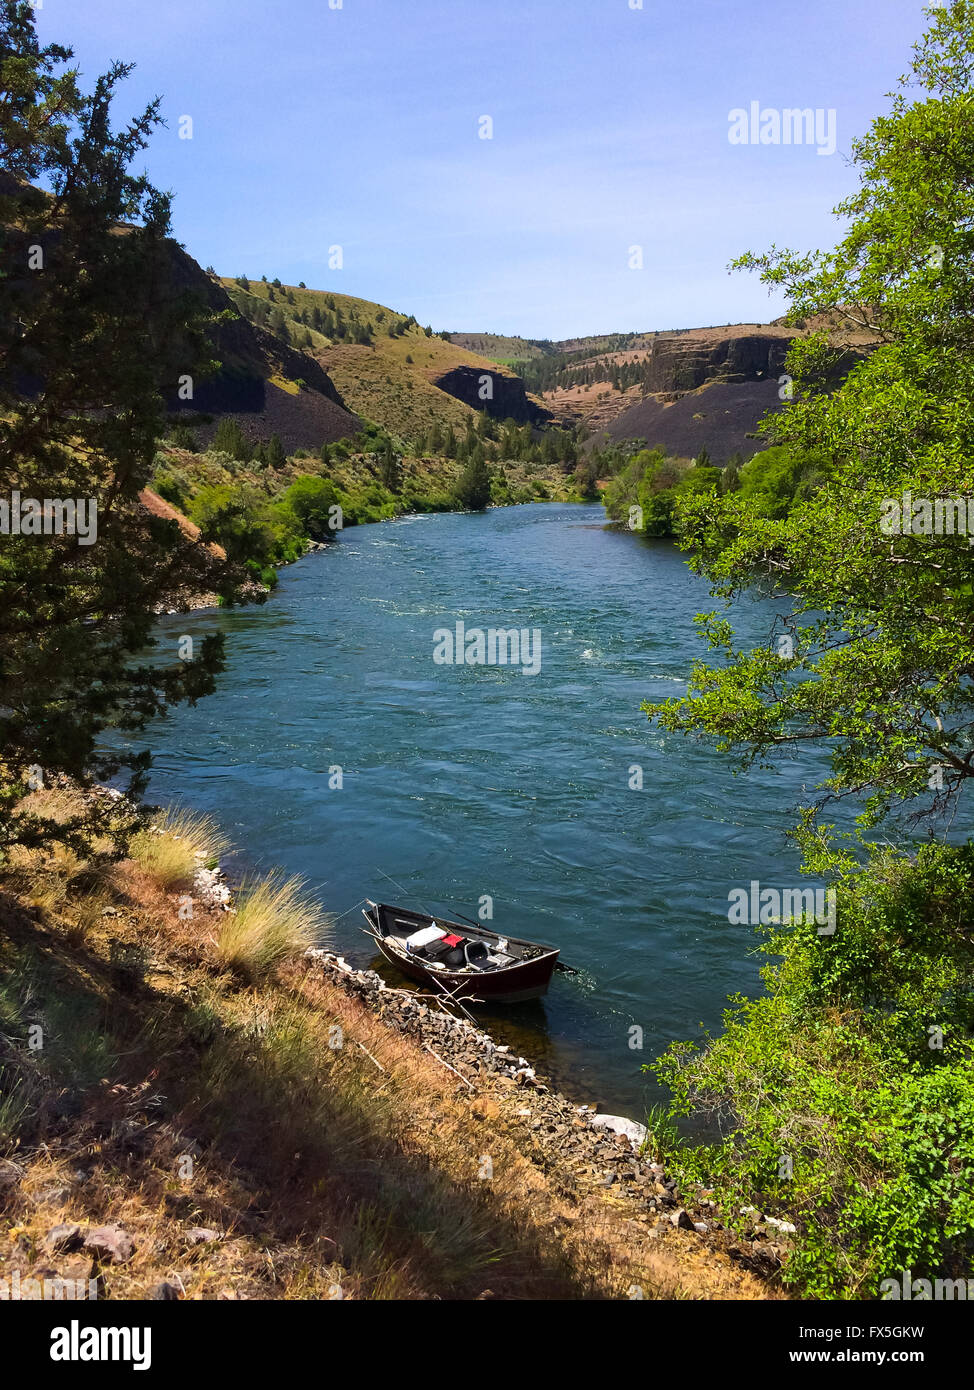 La naturaleza pintoresca desde el río de Deschutes inferior y salvaje sección panorámica del cañón en el agua. Foto de stock